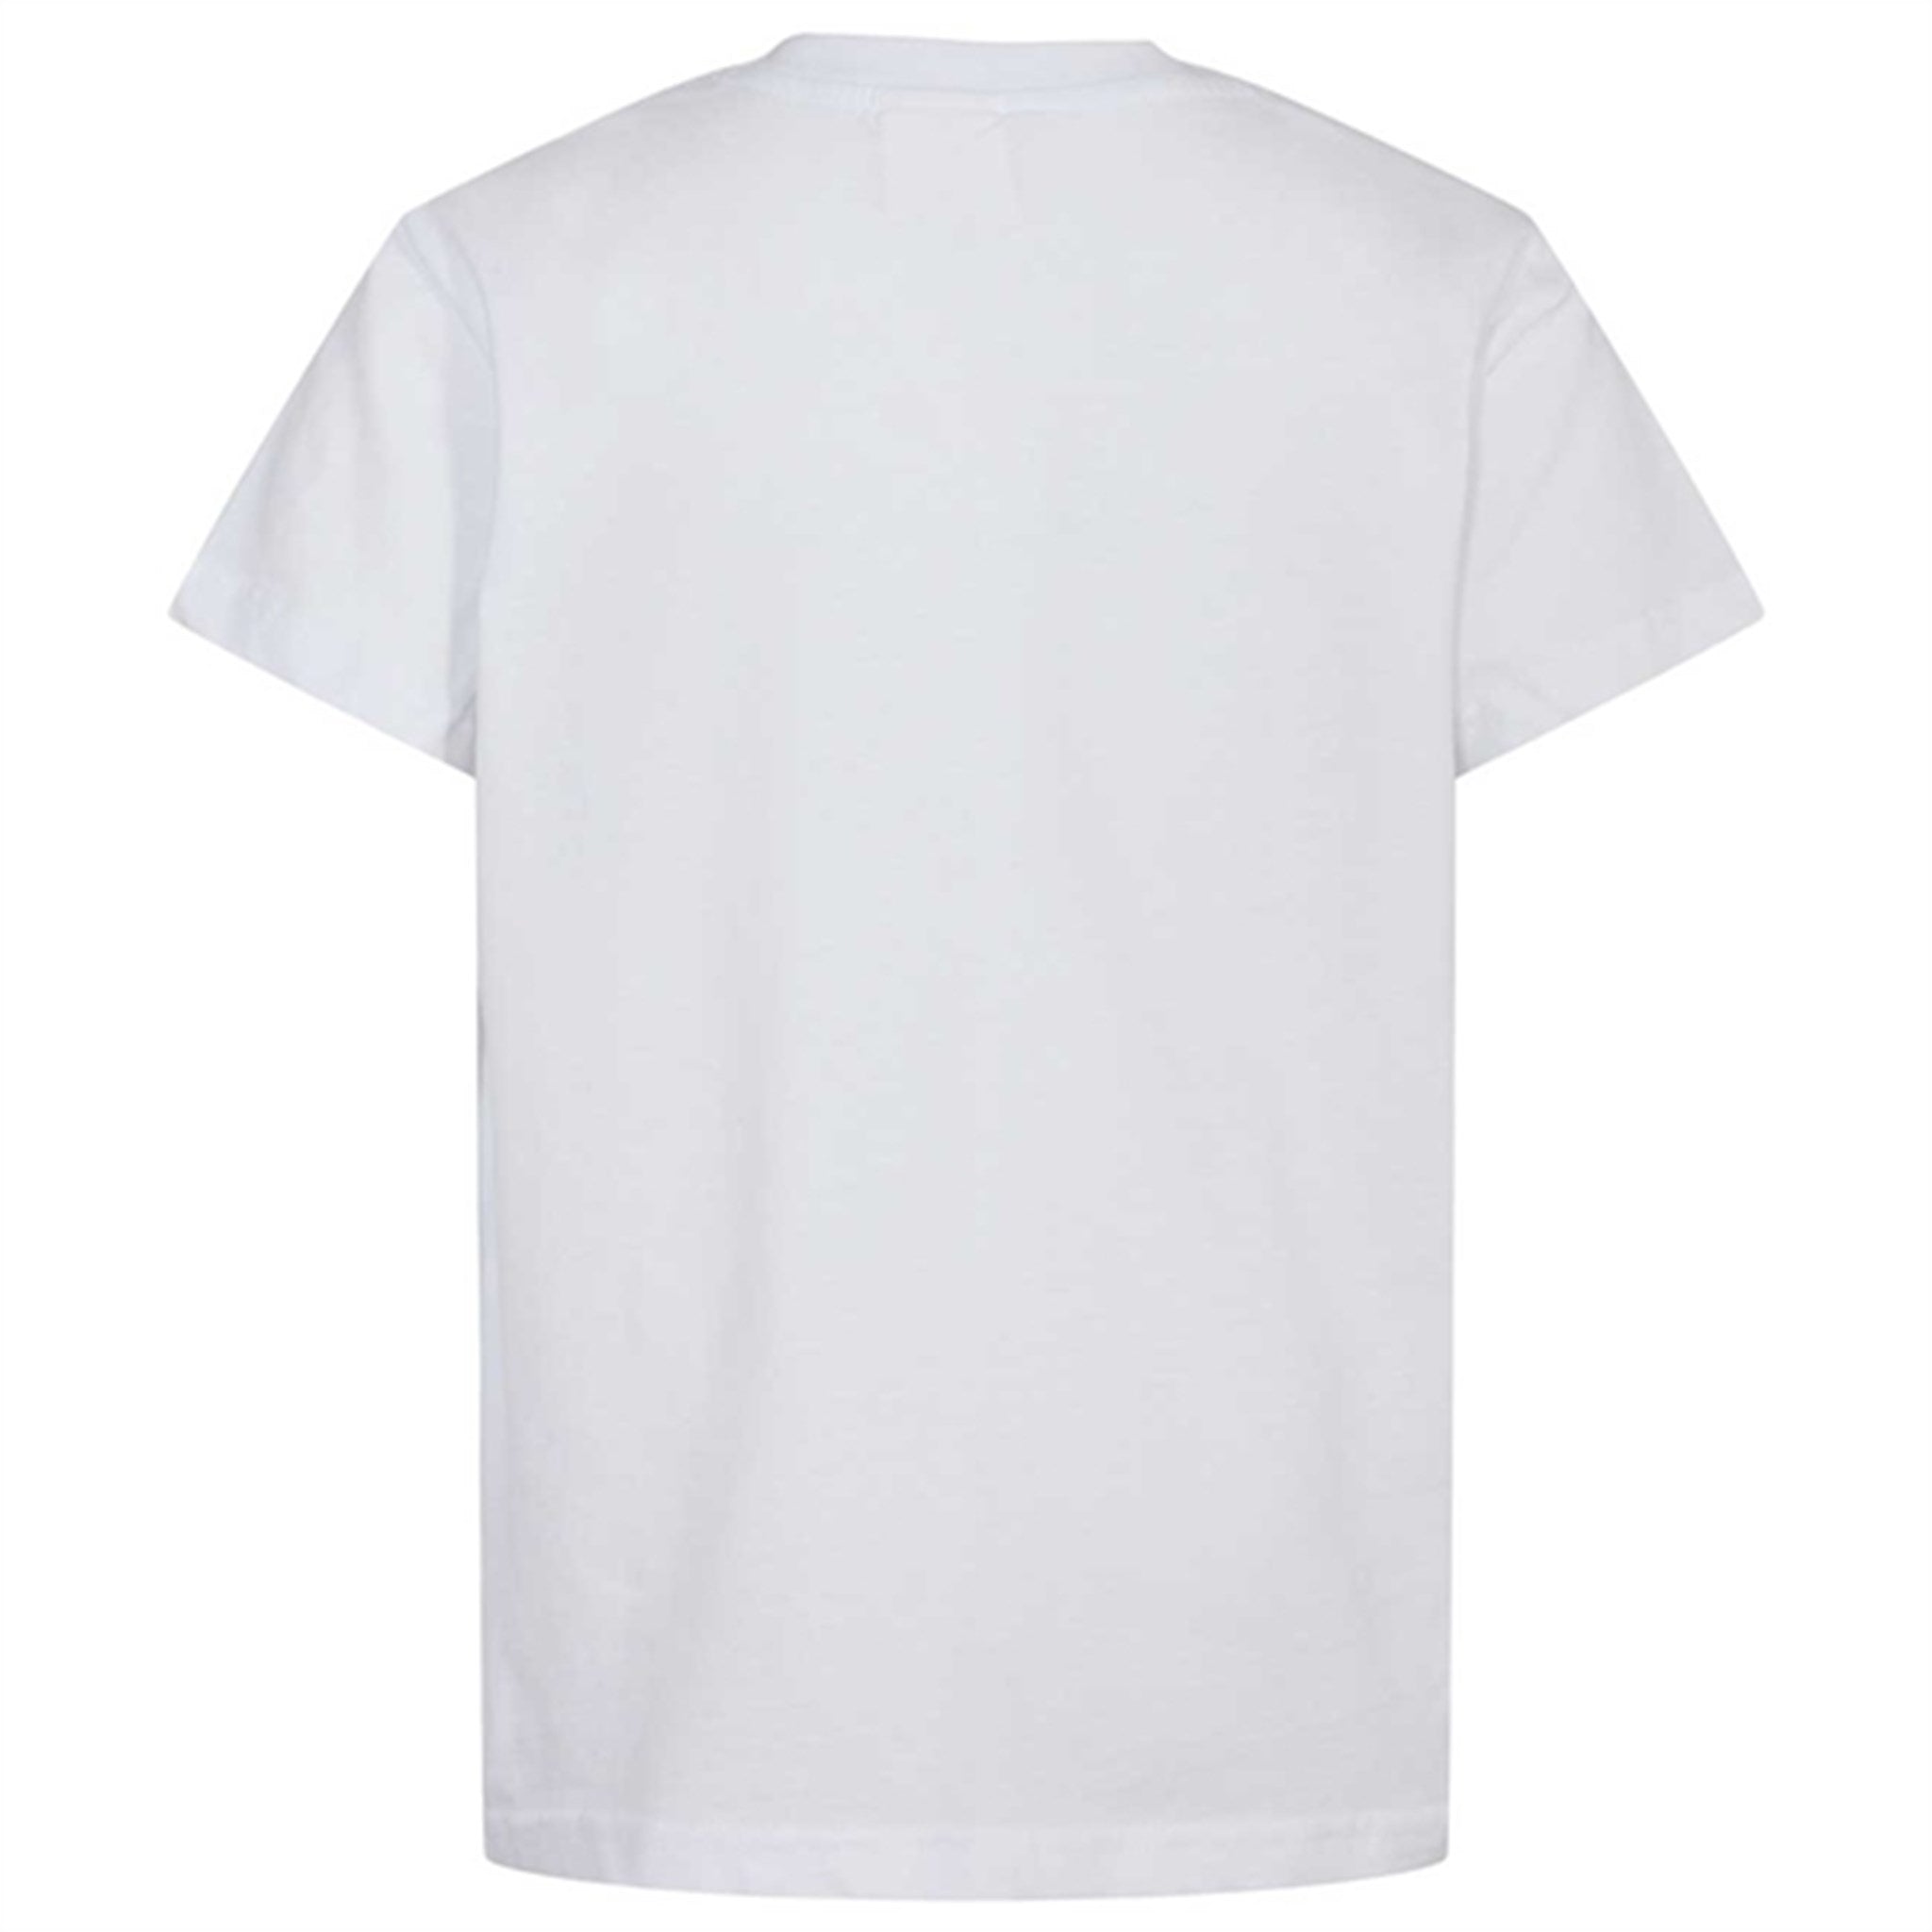 Sofie Schnoor White Noos T-shirt 2